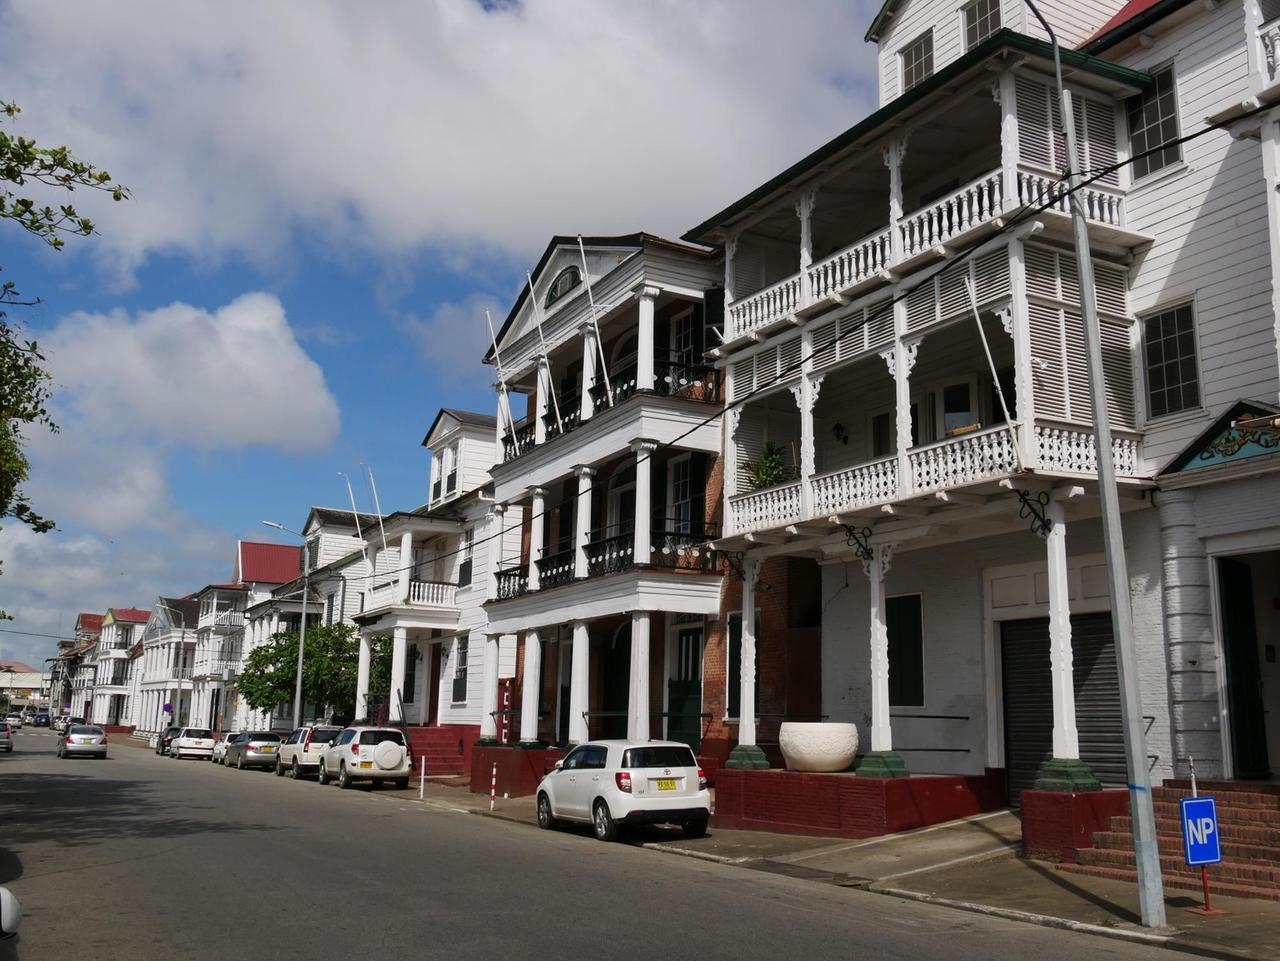 Die Holzvillen in der Hauptstadt Paramaribo haben Großbrände, das Ende der Sklaverei und den Bürgerkrieg überlebt. Seit 2002 gehört die Altstadt zum UNESCO-Weltkulturerbe.